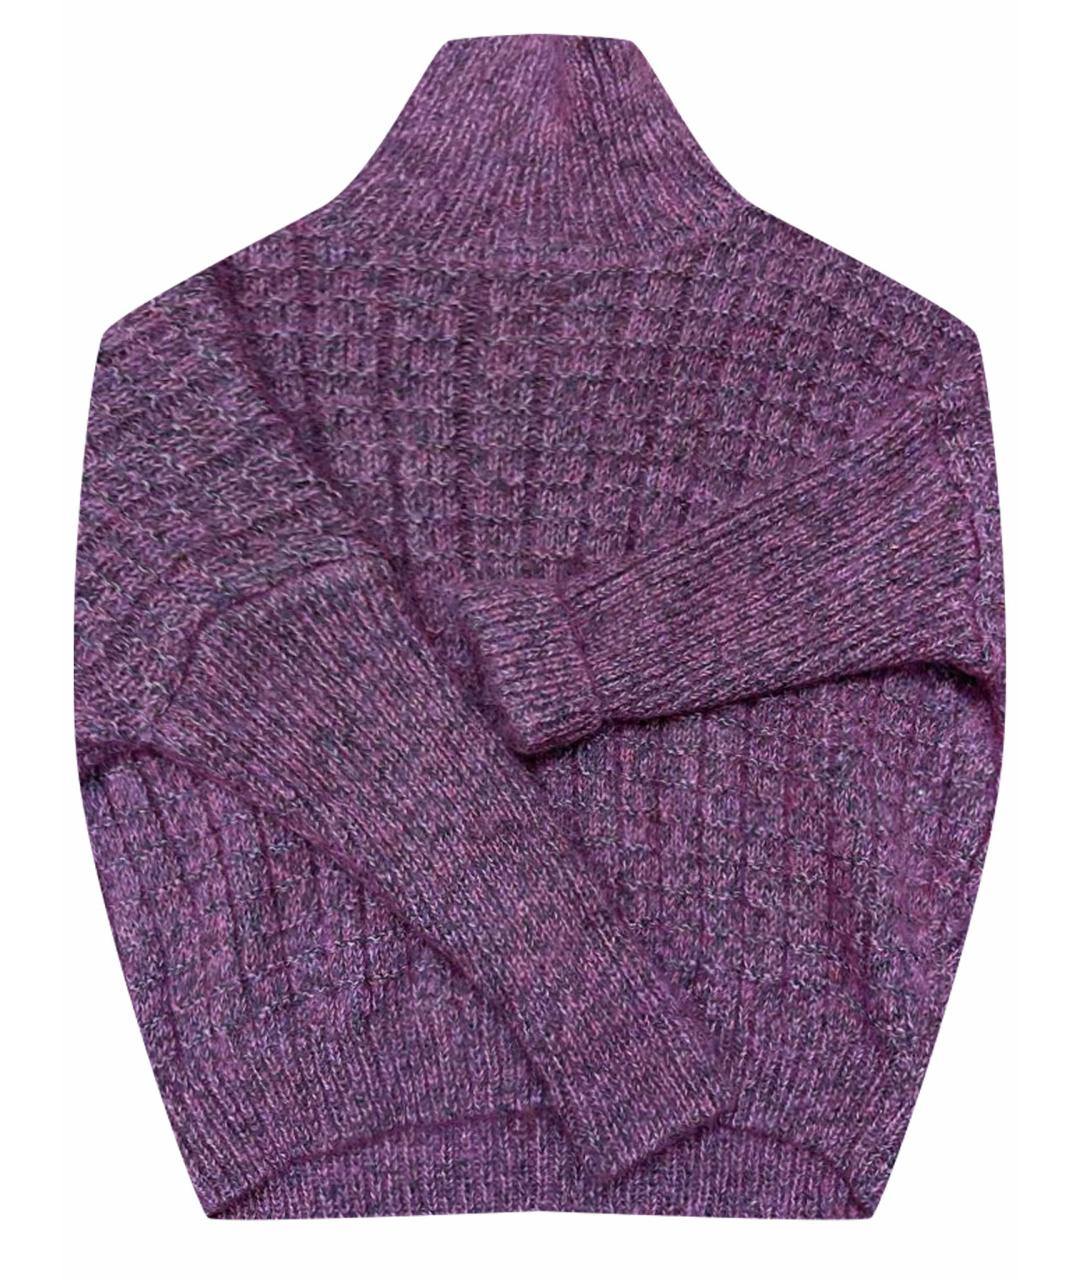 GRAVITEIGHT Розовый полиамидовый джемпер / свитер, фото 1